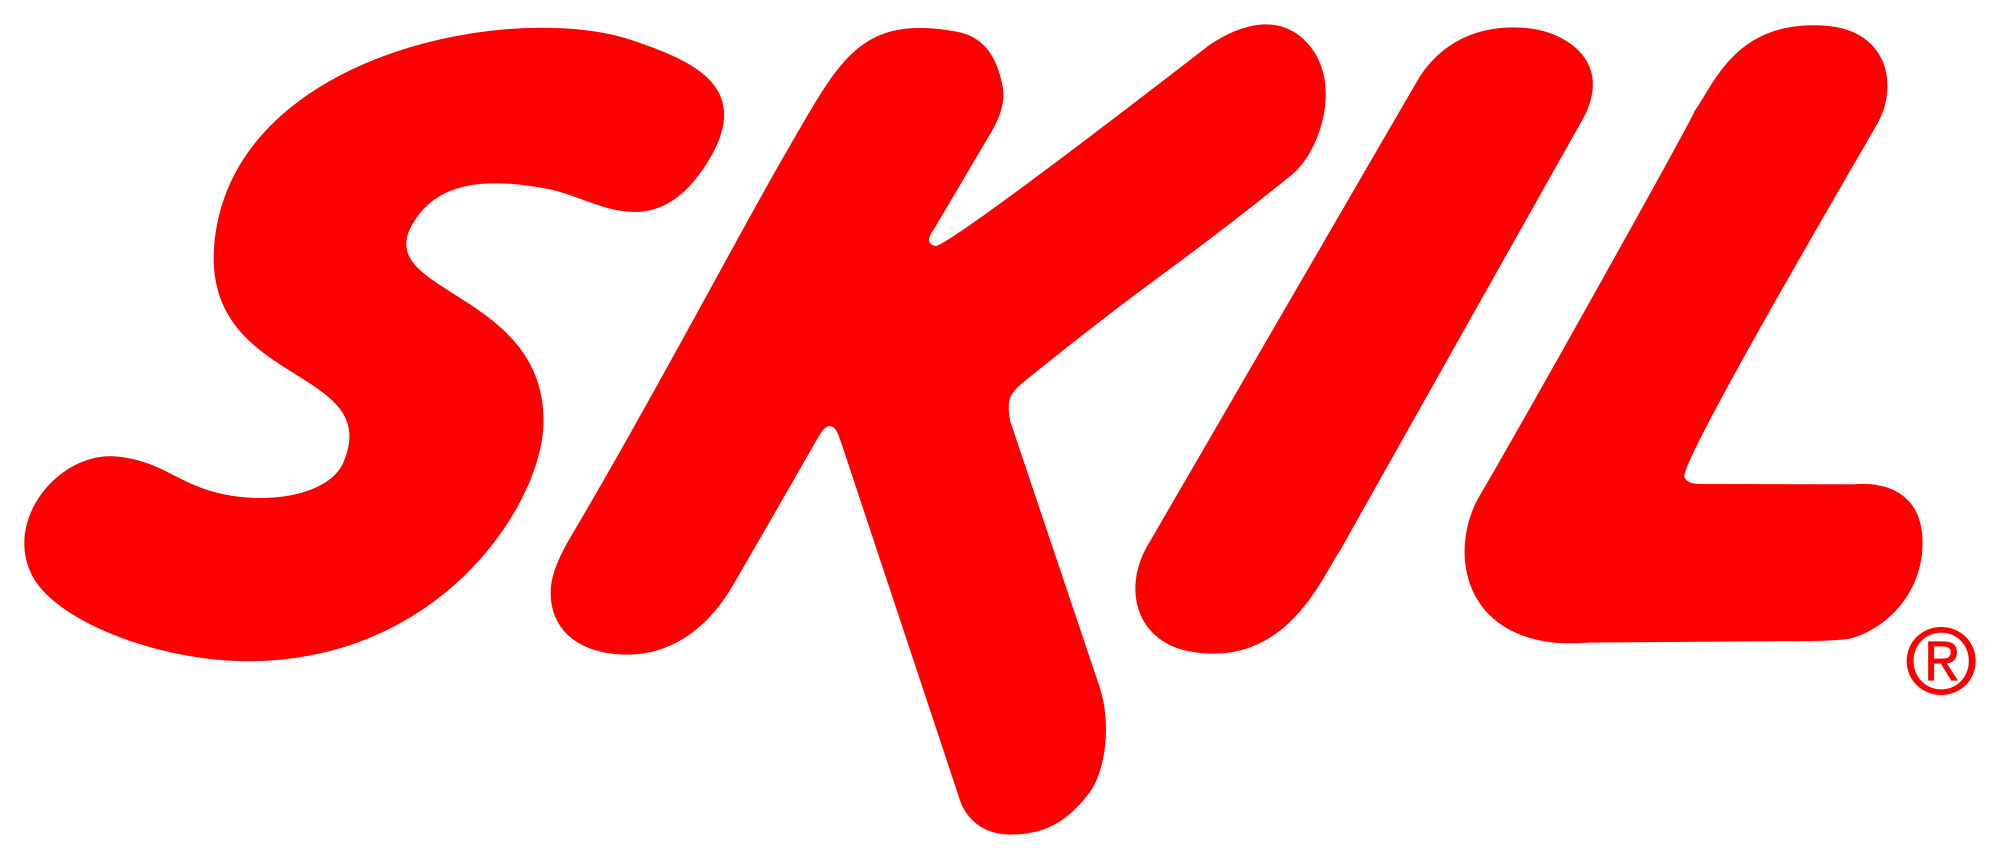 2000px-Skil_logo.svg